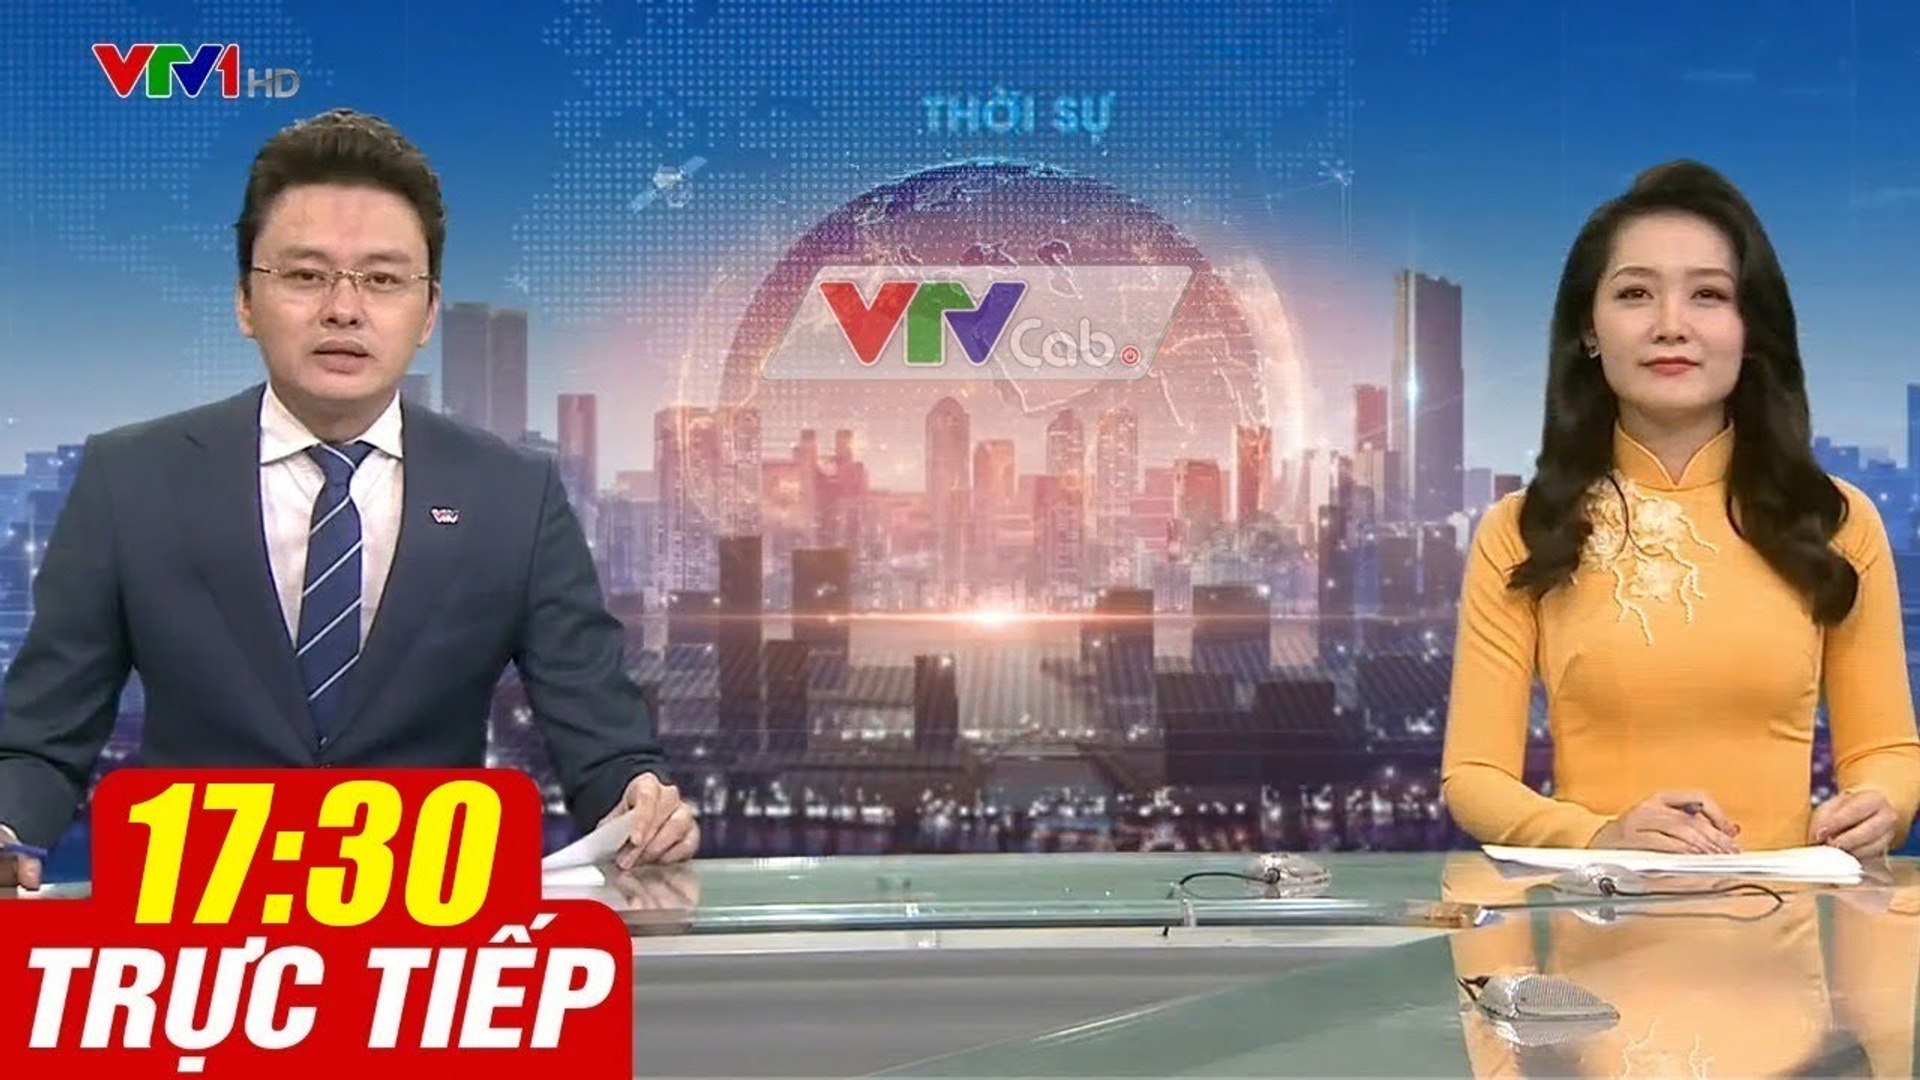 Trực Tiếp VIỆT NAM HÔM NAY 17h30 ngày 1.09.2020  Tin tức thời sự VTV1 mới nhất hôm nay